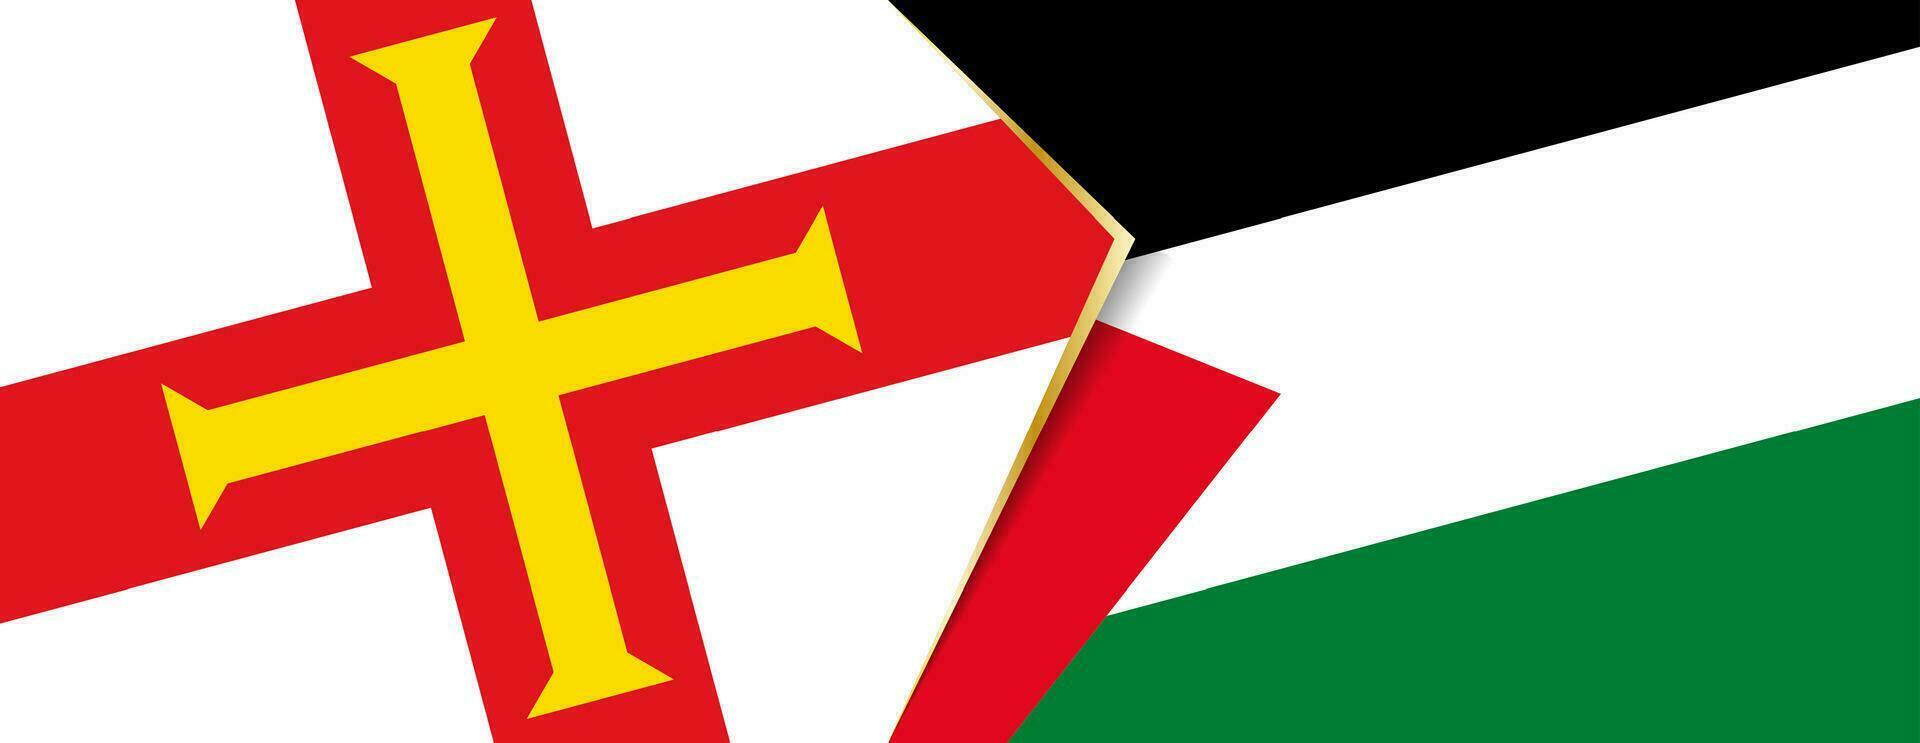 Guernsey e Palestina bandeiras, dois vetor bandeiras.